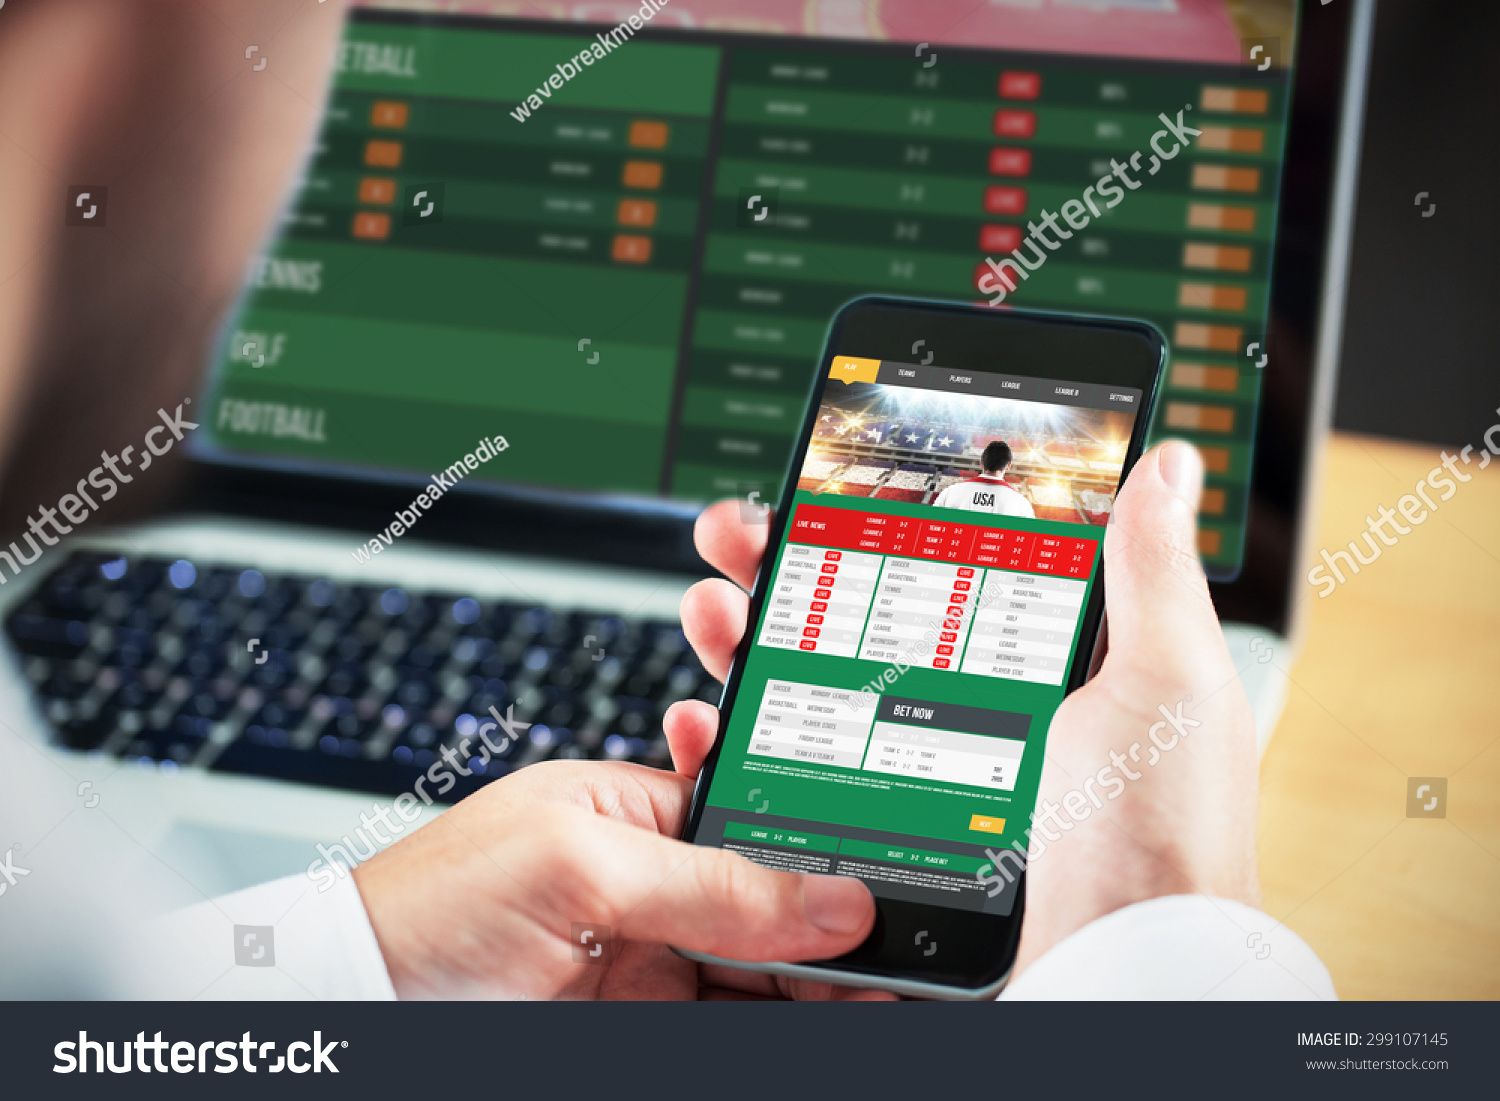 Businessman using smartphone against gambling app screen #299107145